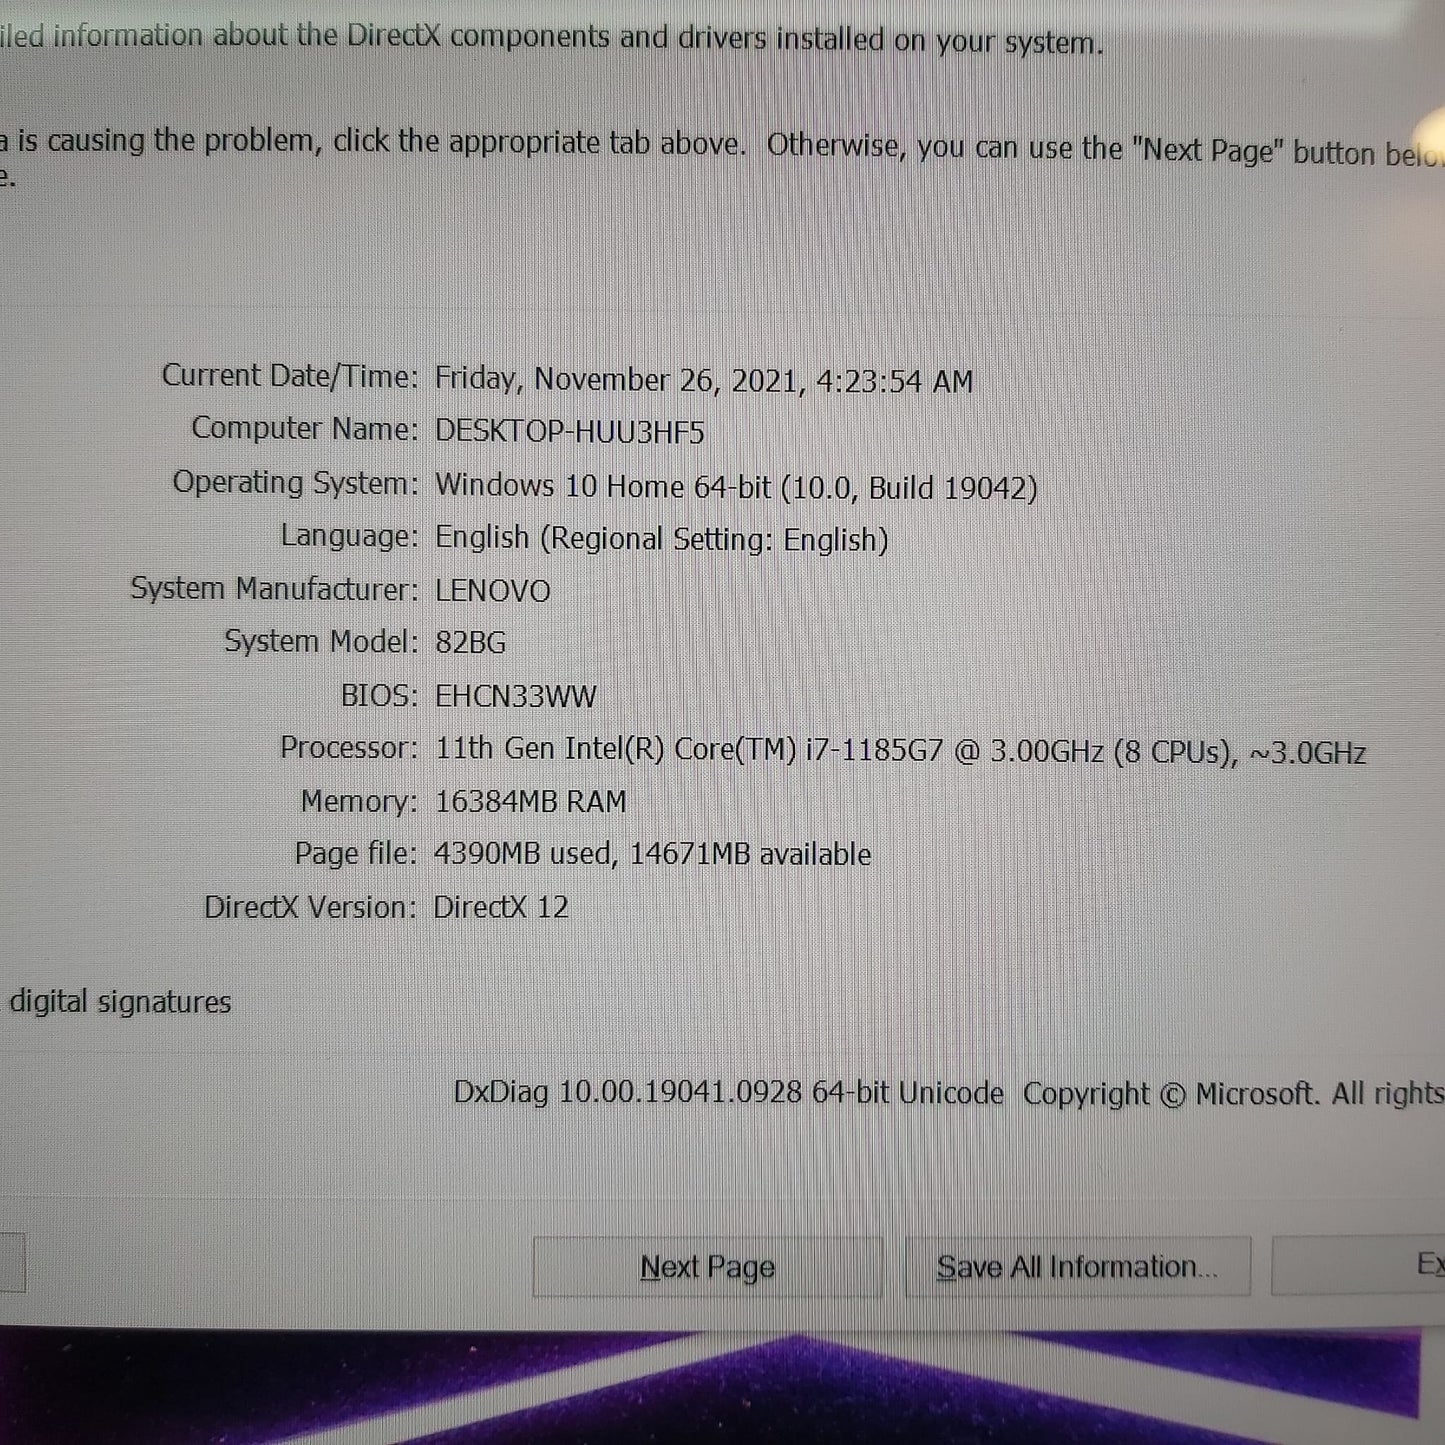 Lenovo Yoga 9 14itl5 2in1 Laptop (Brand New)